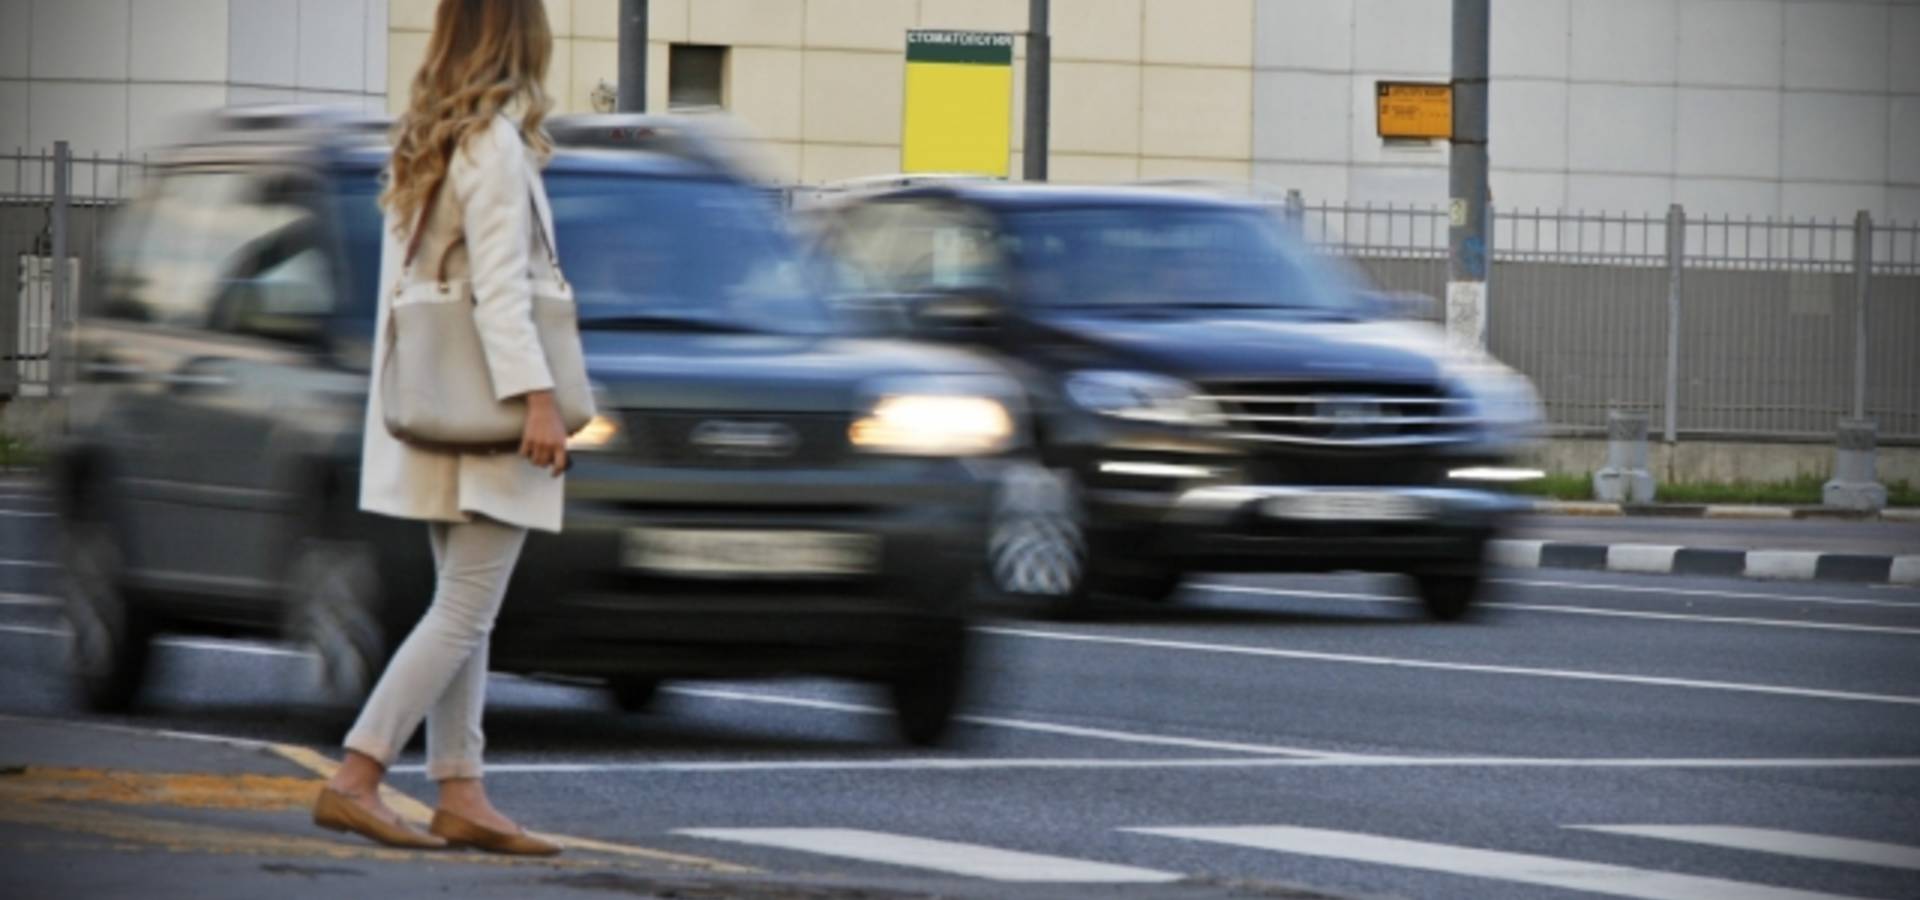 До уваги водіїв та пішоходів! В Хмільницькому районі тривають профілактичні заходи "Безпечні шляхи-2023"